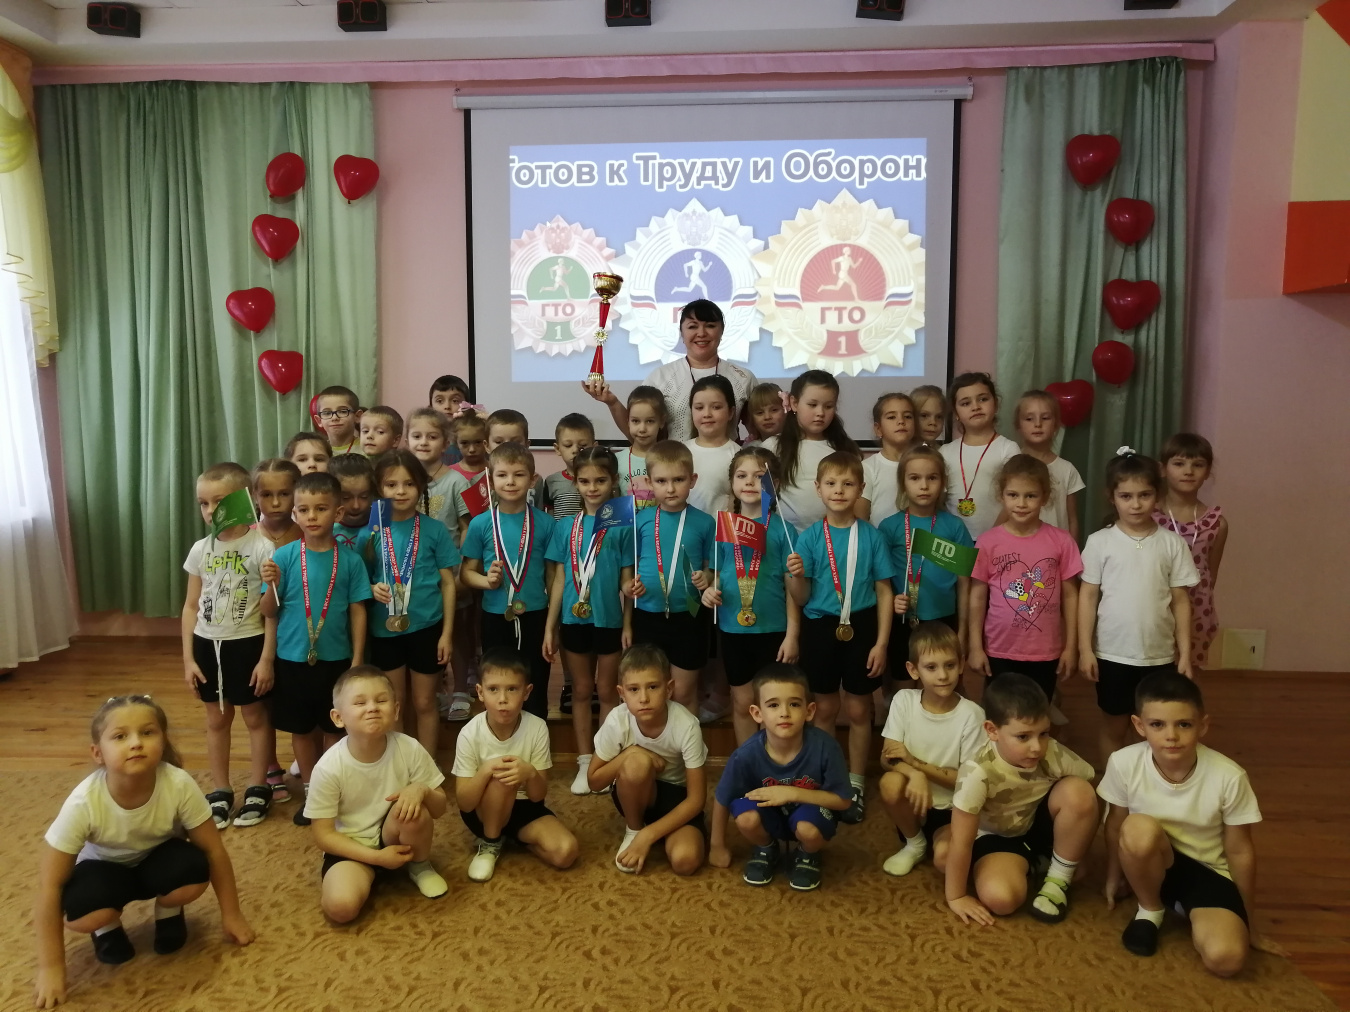 Торжественное награждение победителей Фестиваля ГТО среди воспитанников детских садов в Бобровском муниципальном районе.